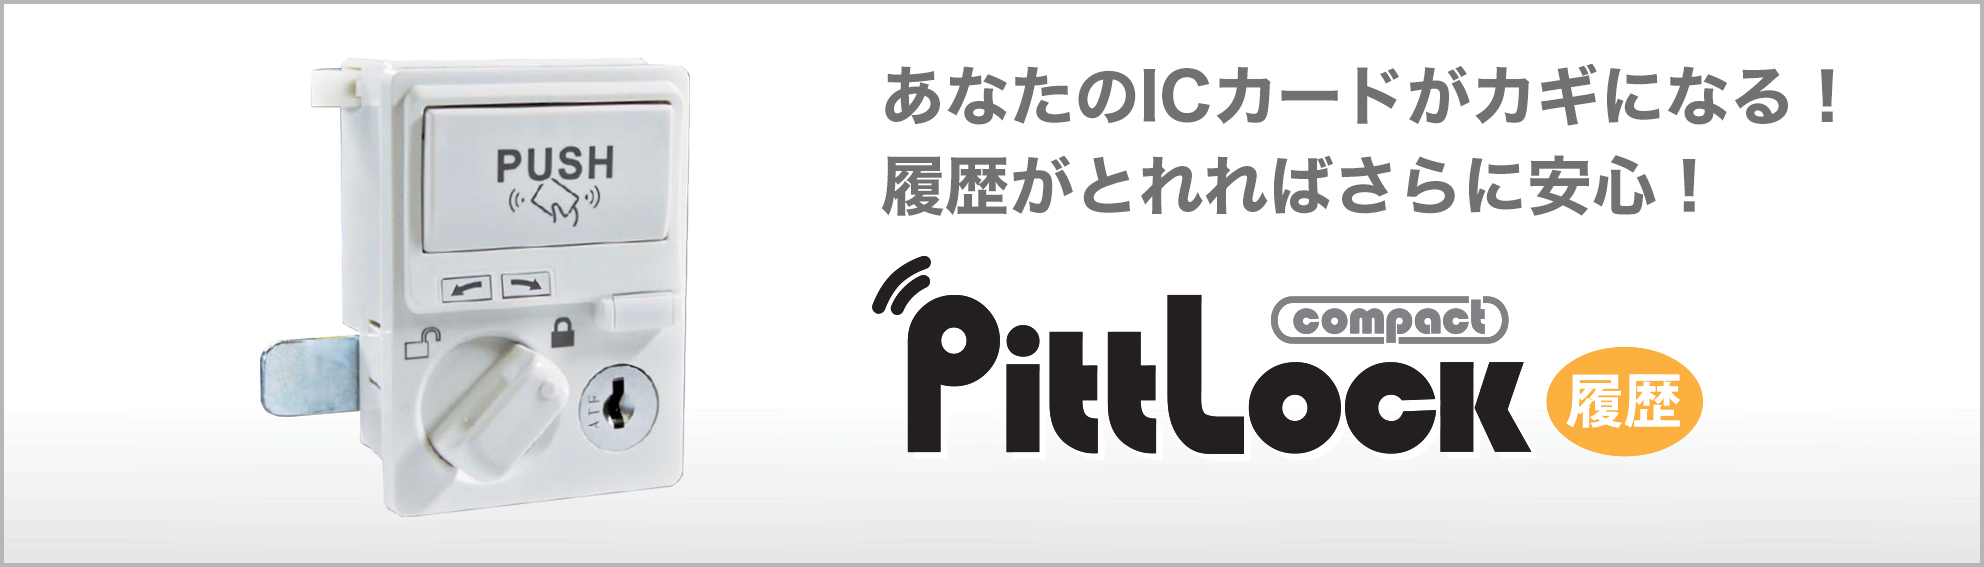 Pitt Lock compact(履歴)